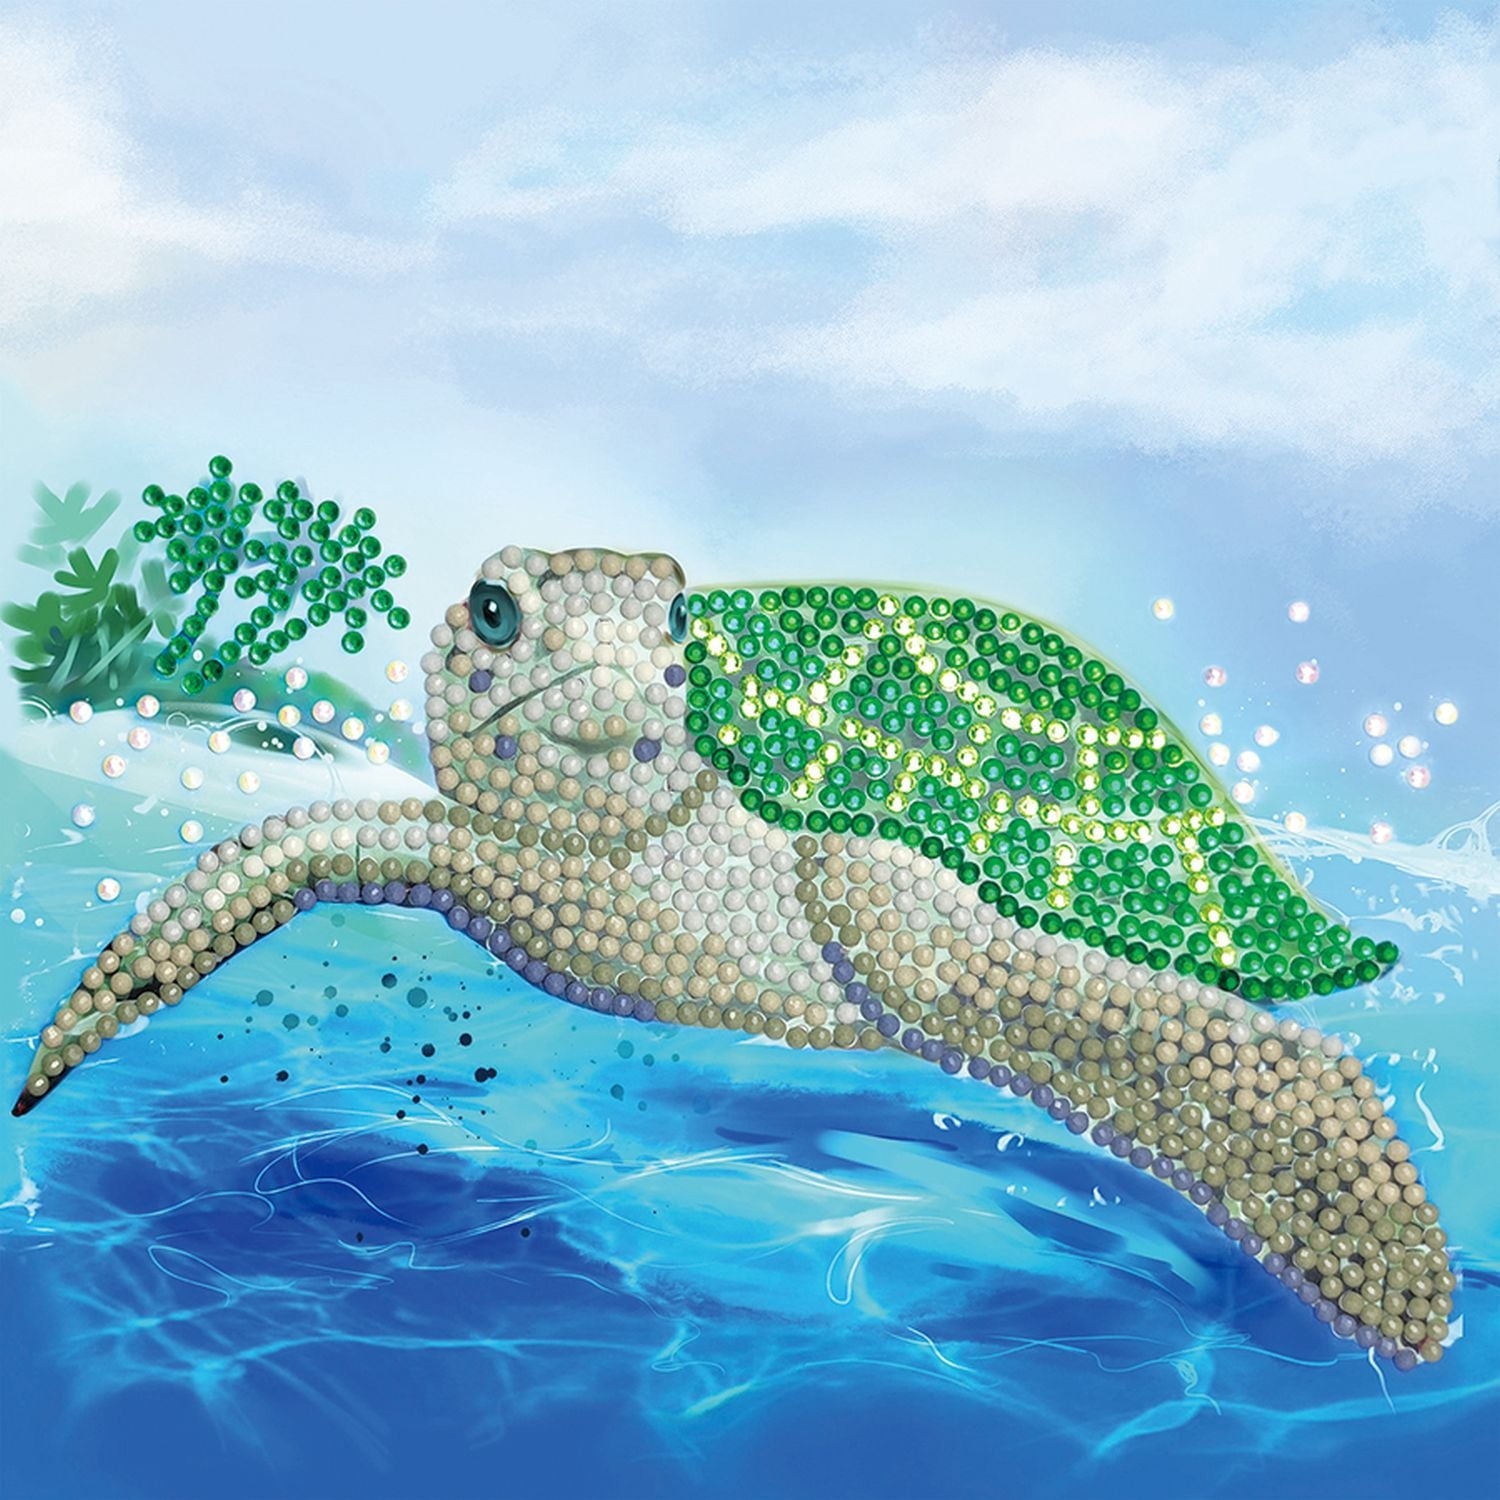 TISHIRON Full Drill 5D Diamond Painting Sea Turtle Diamond